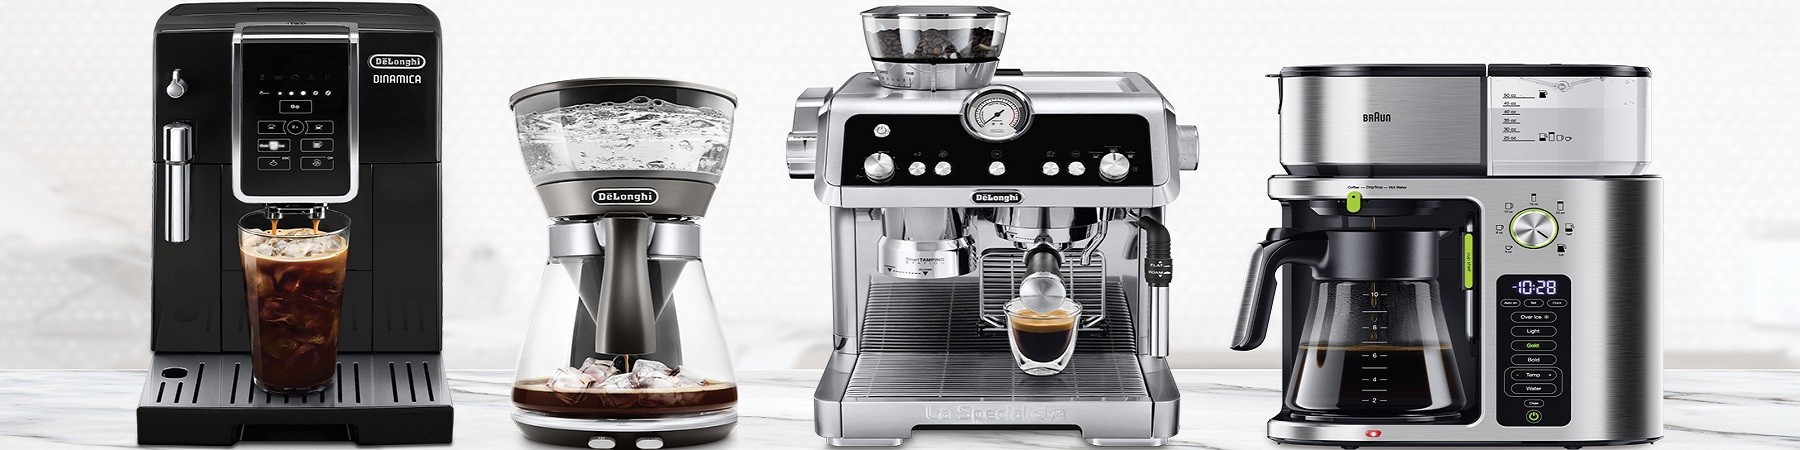 Máy pha cafe-cà phê latte,espresso,capuchino tự động chính hãng,giá rẻ